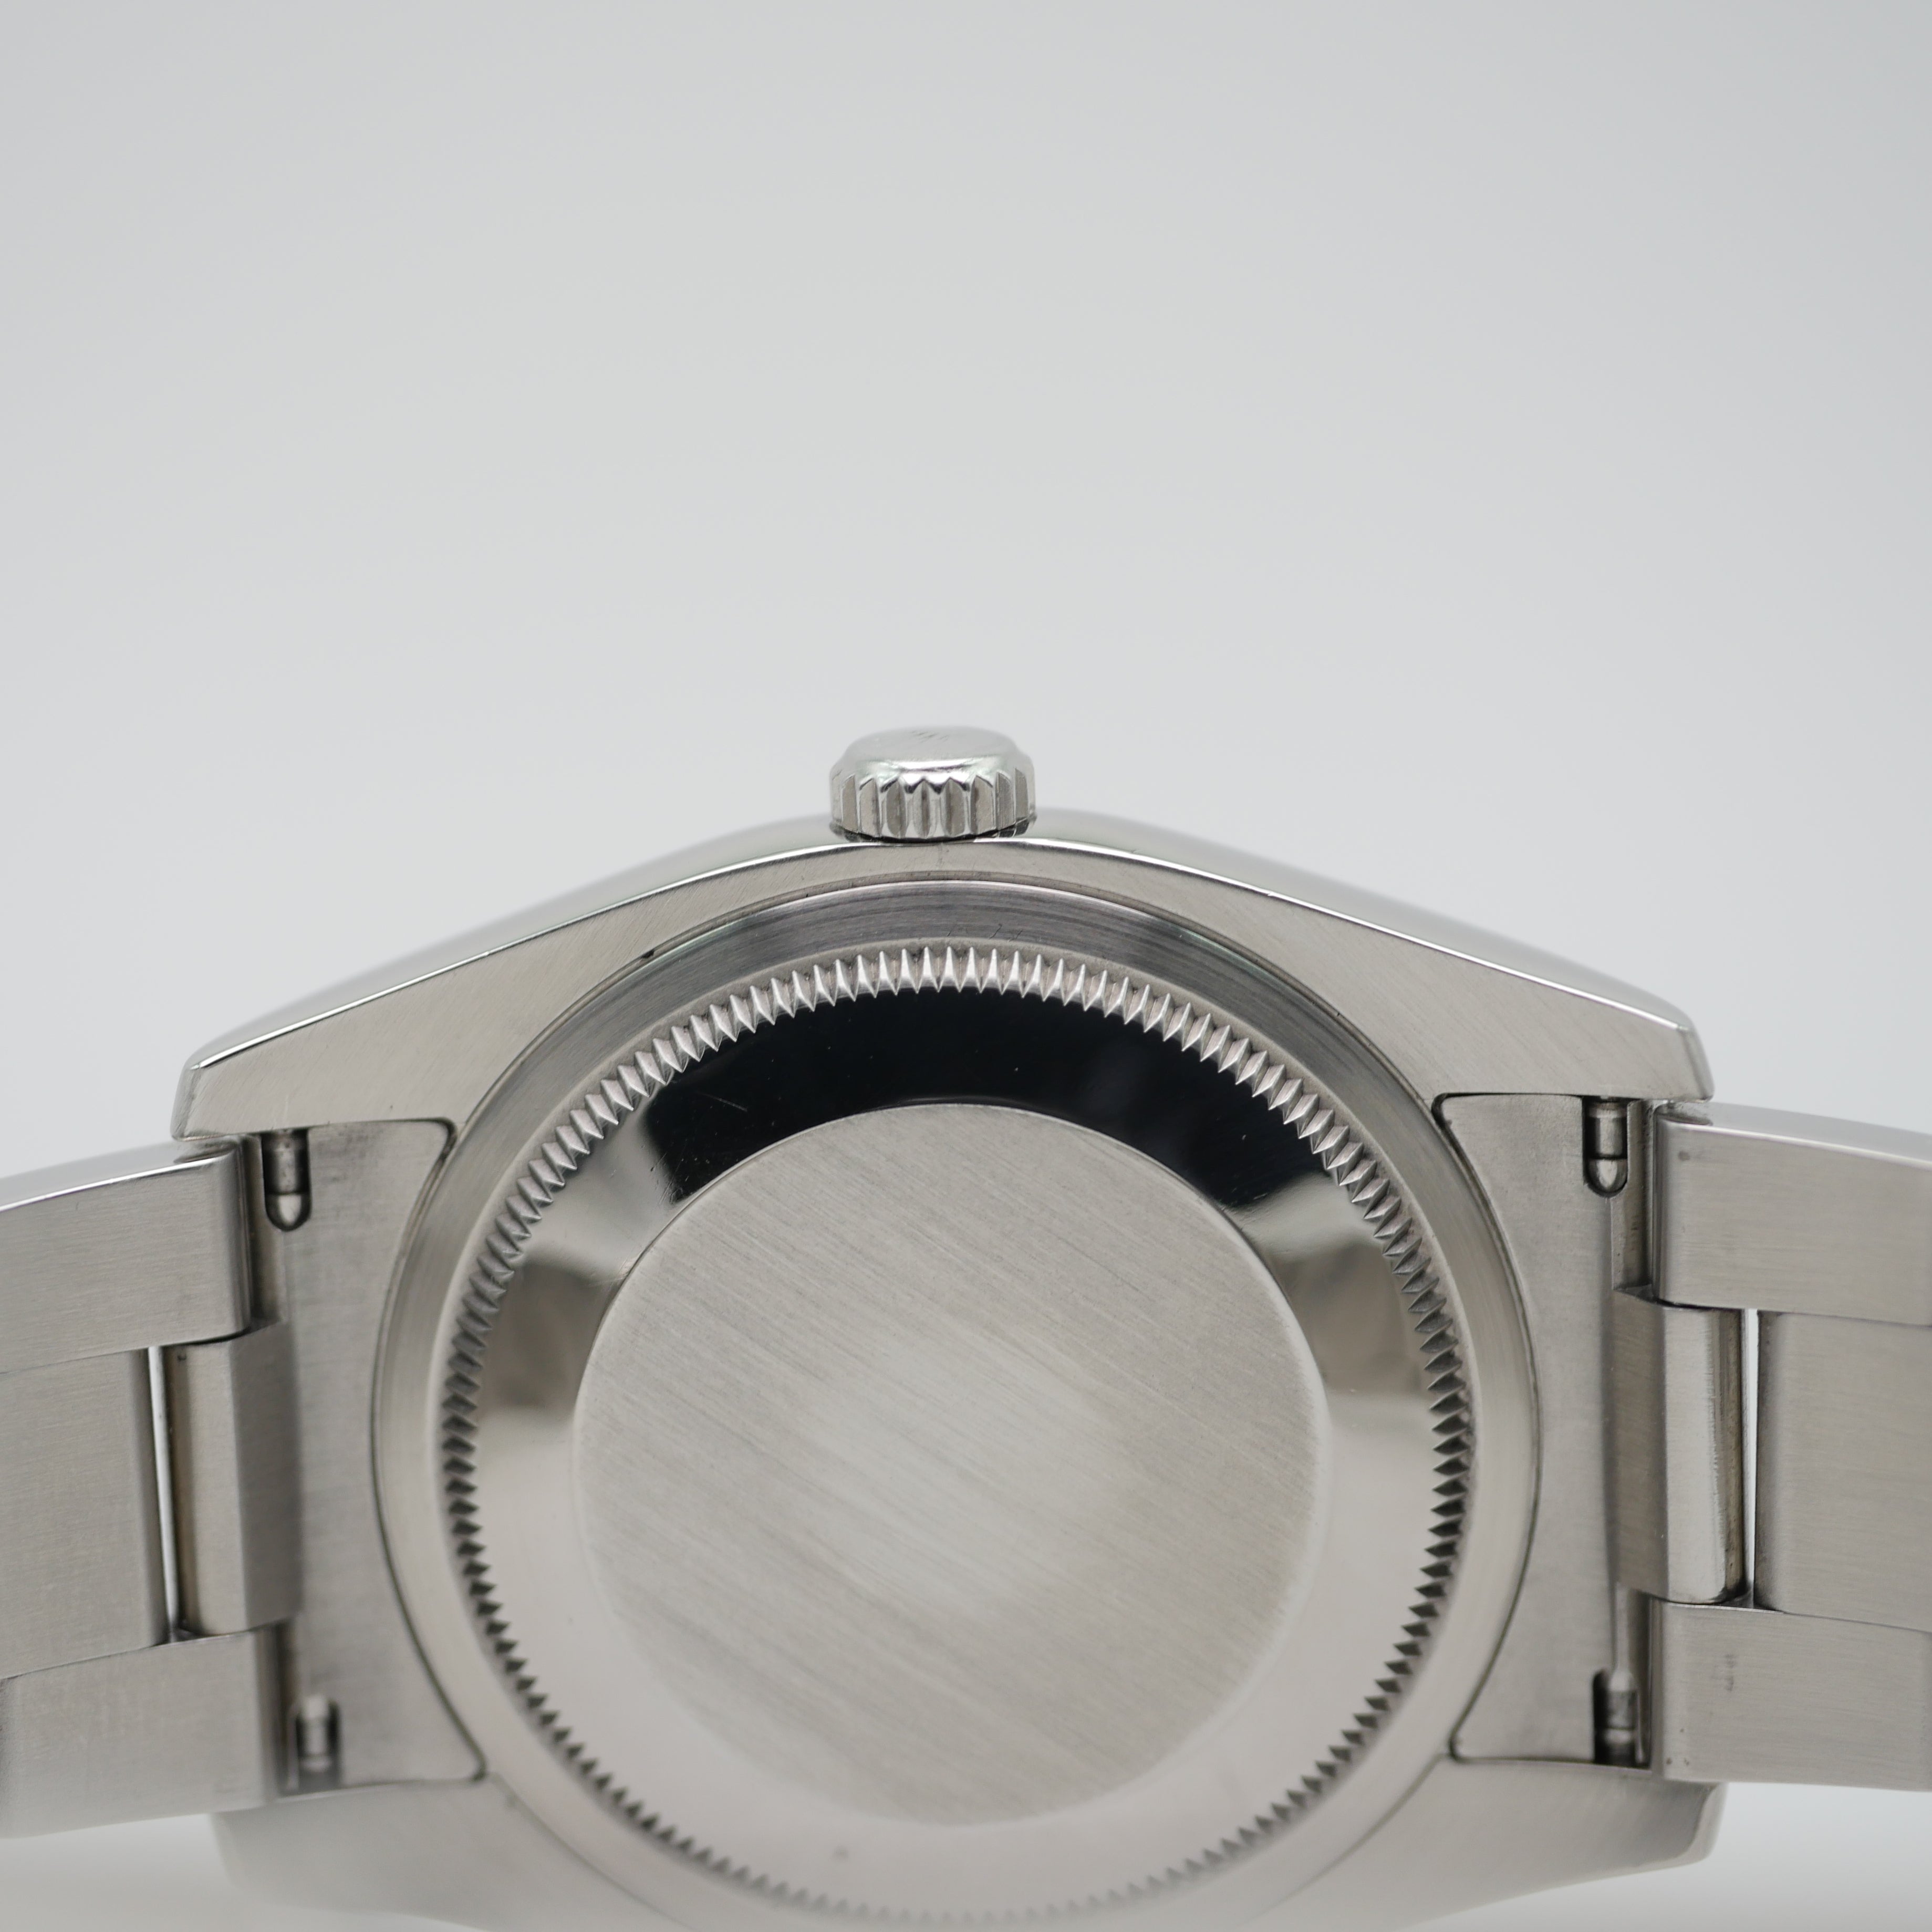 Rolex Datejust 36mm Stahl 116200 - 2014